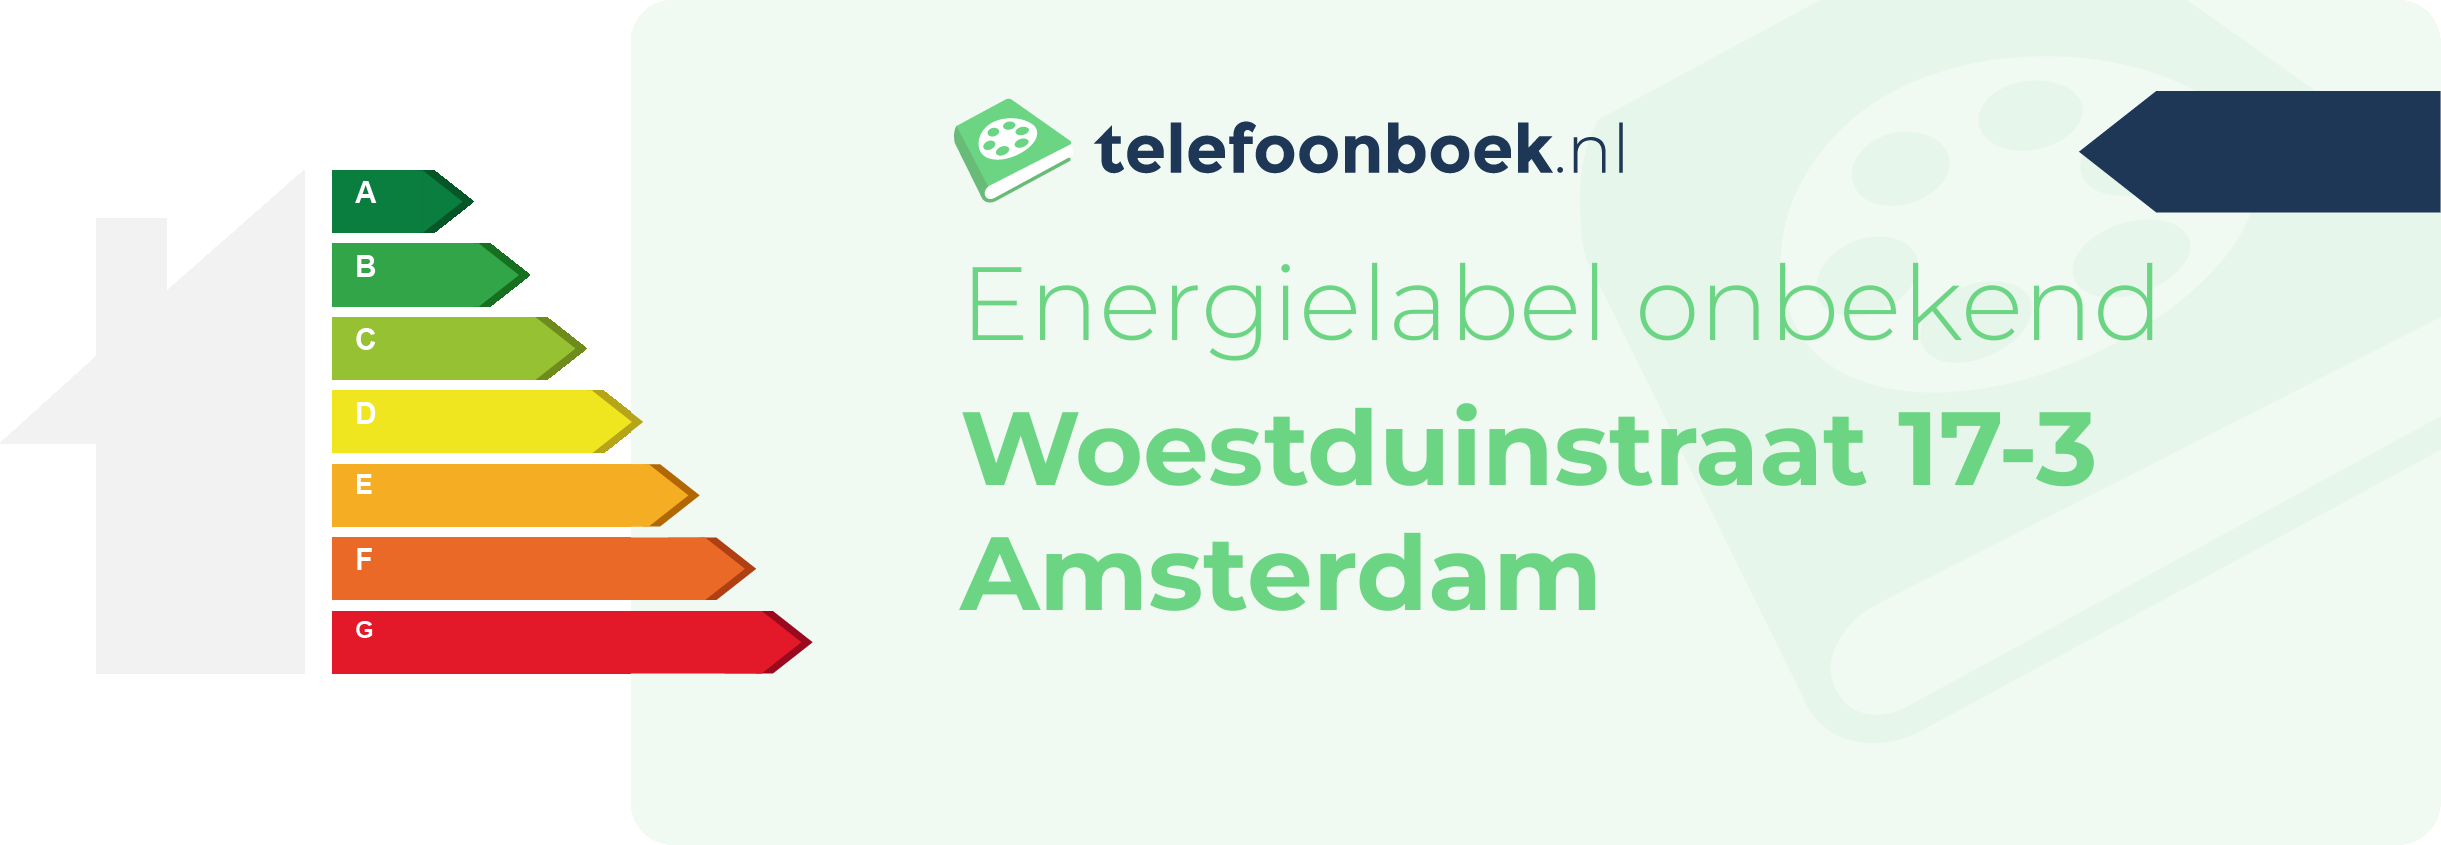 Energielabel Woestduinstraat 17-3 Amsterdam